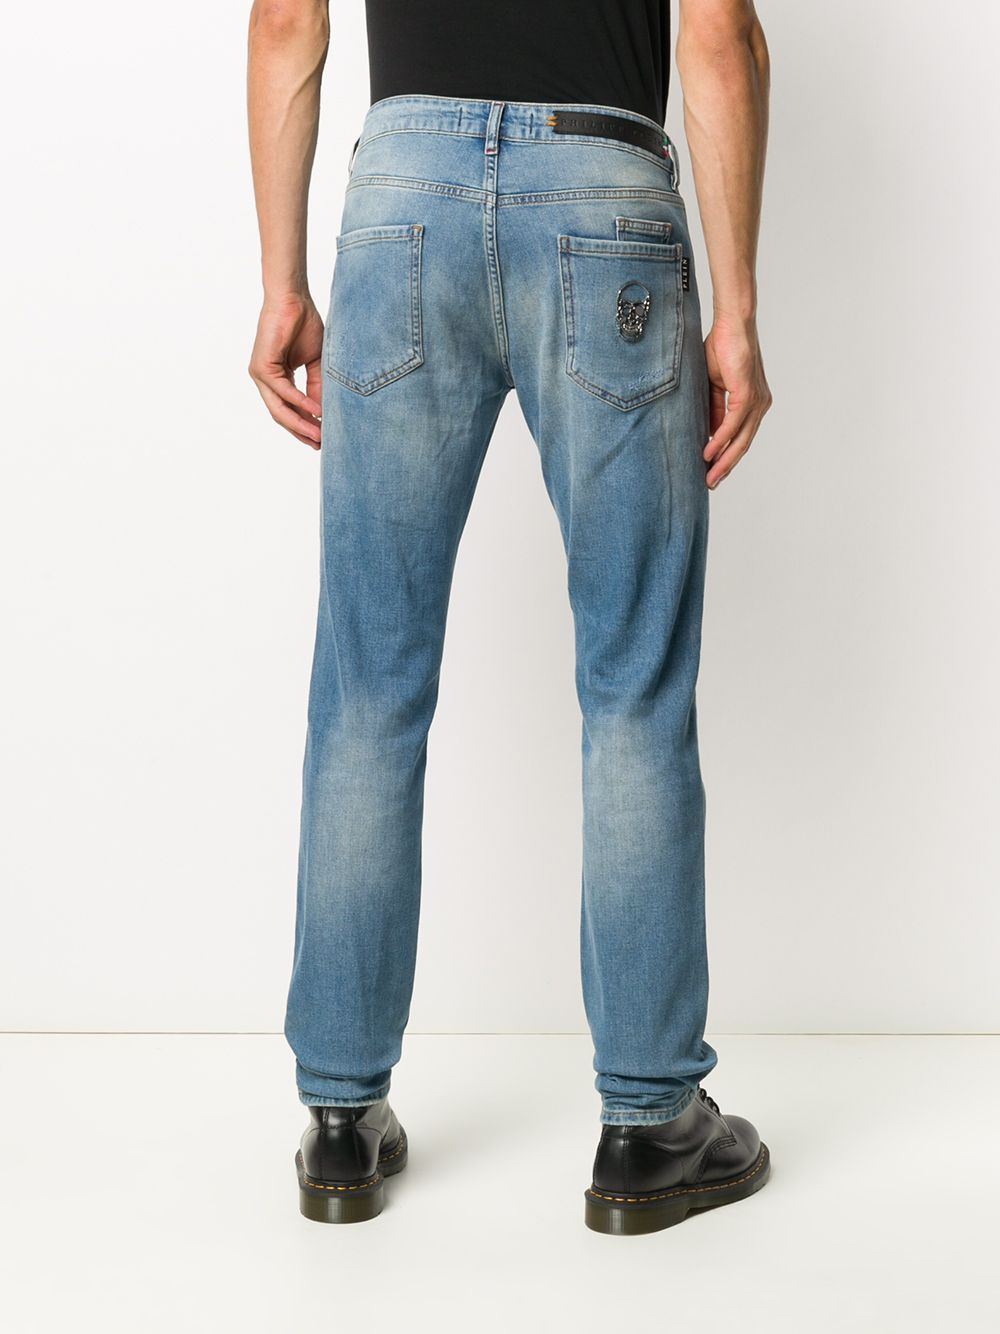 фото Philipp plein джинсы прямого кроя с эффектом потертости